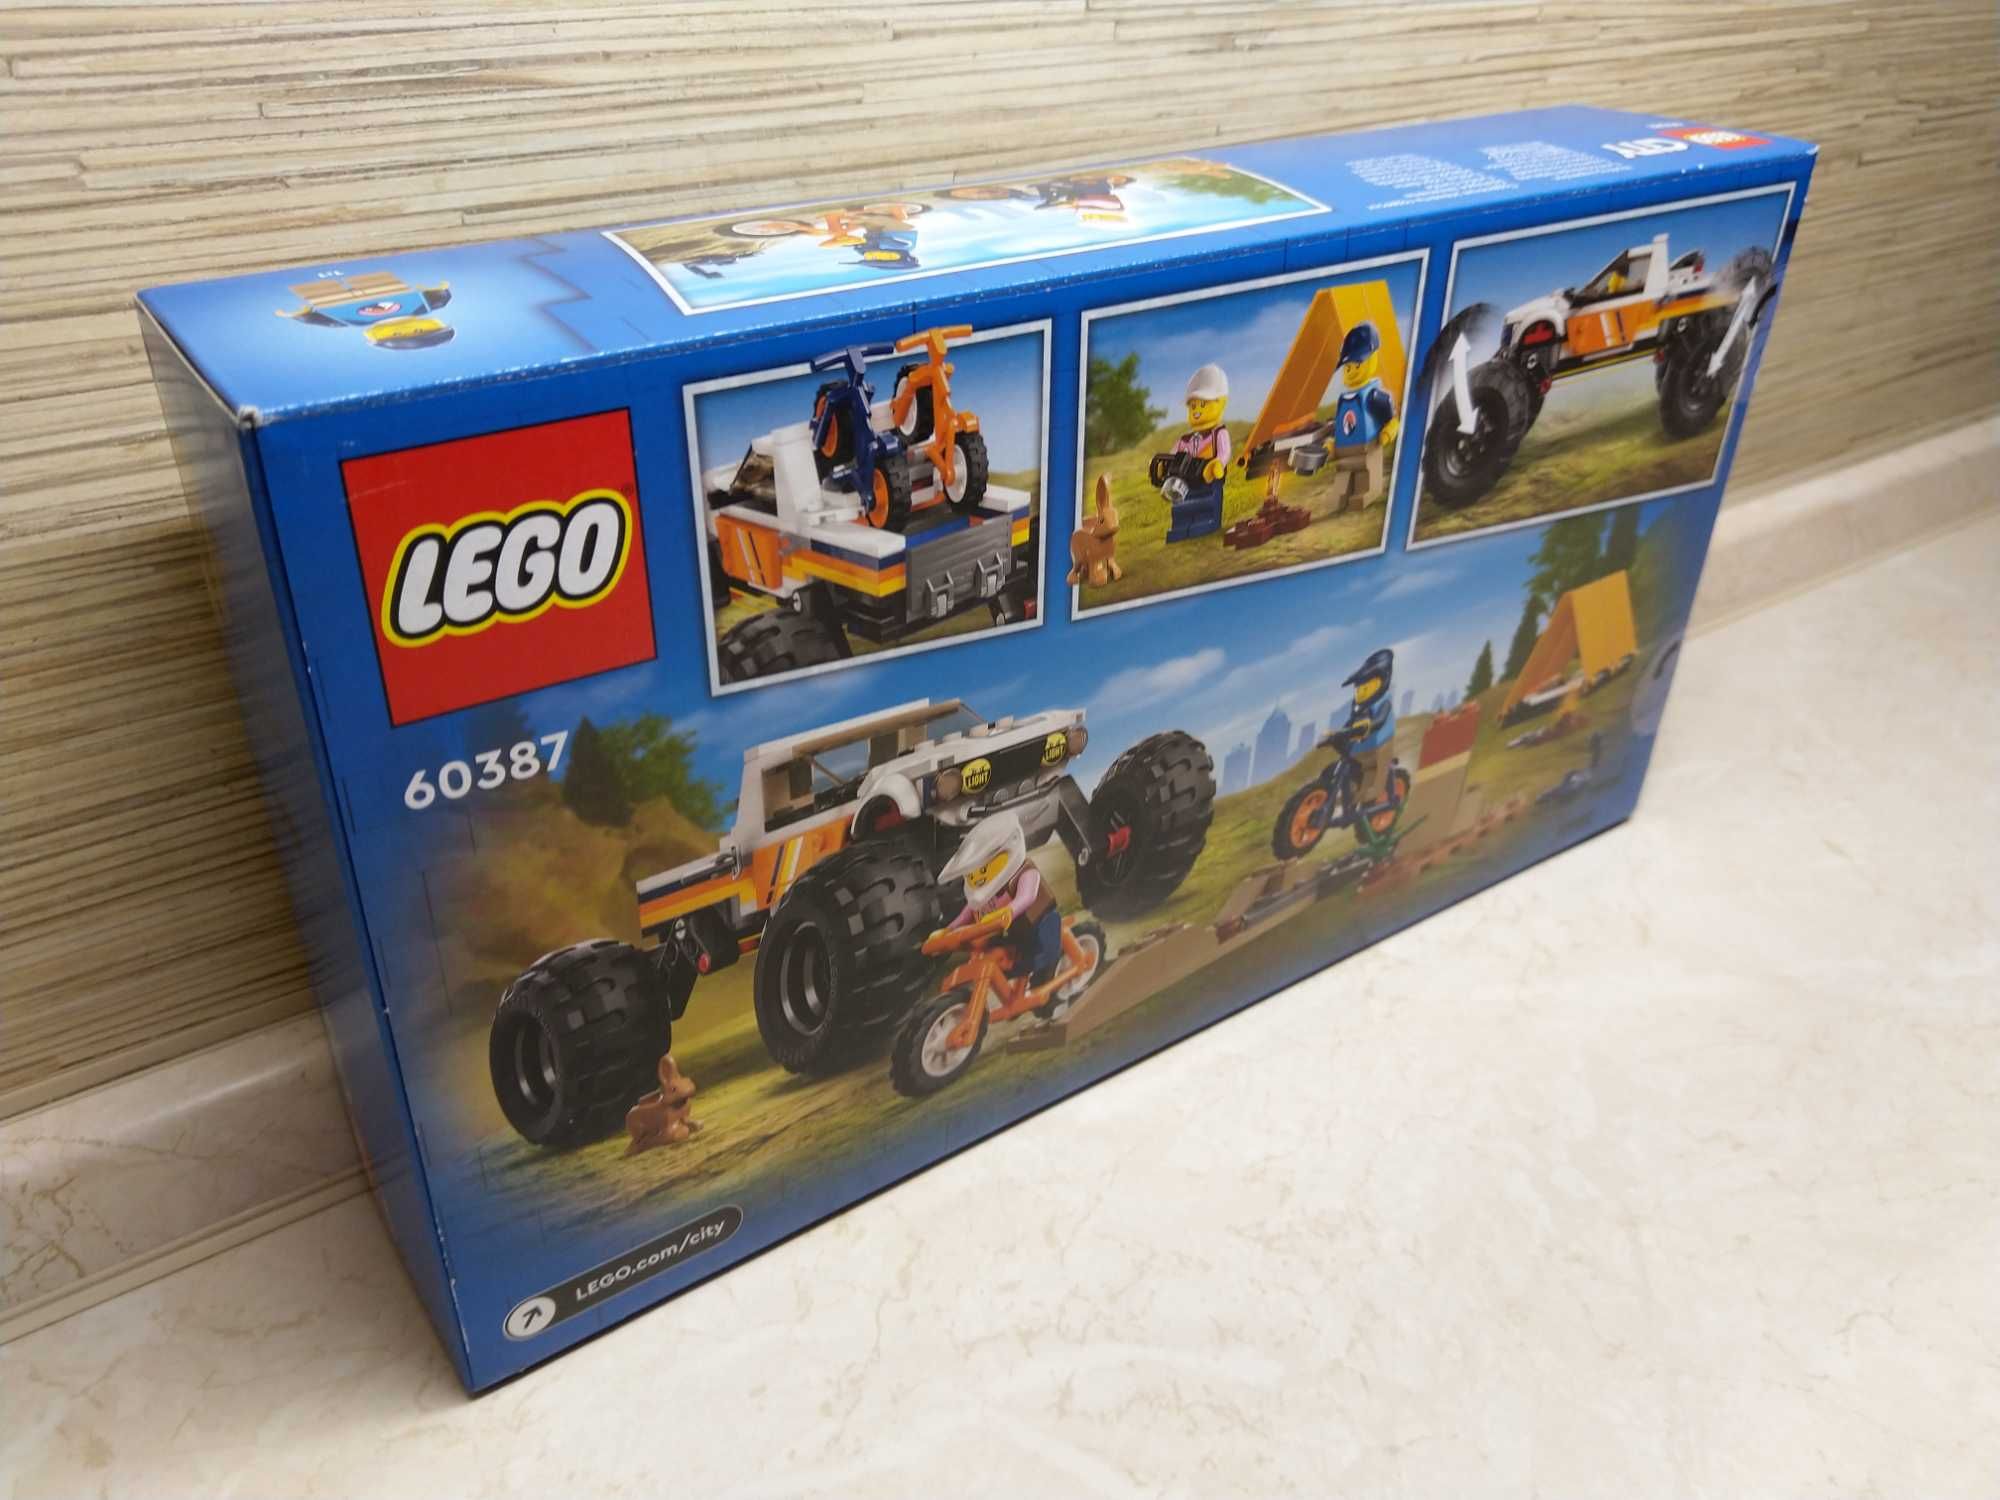 OKAZJA Lego City auto samochód terenowy z napędem 4x4 klocki Wysyłam